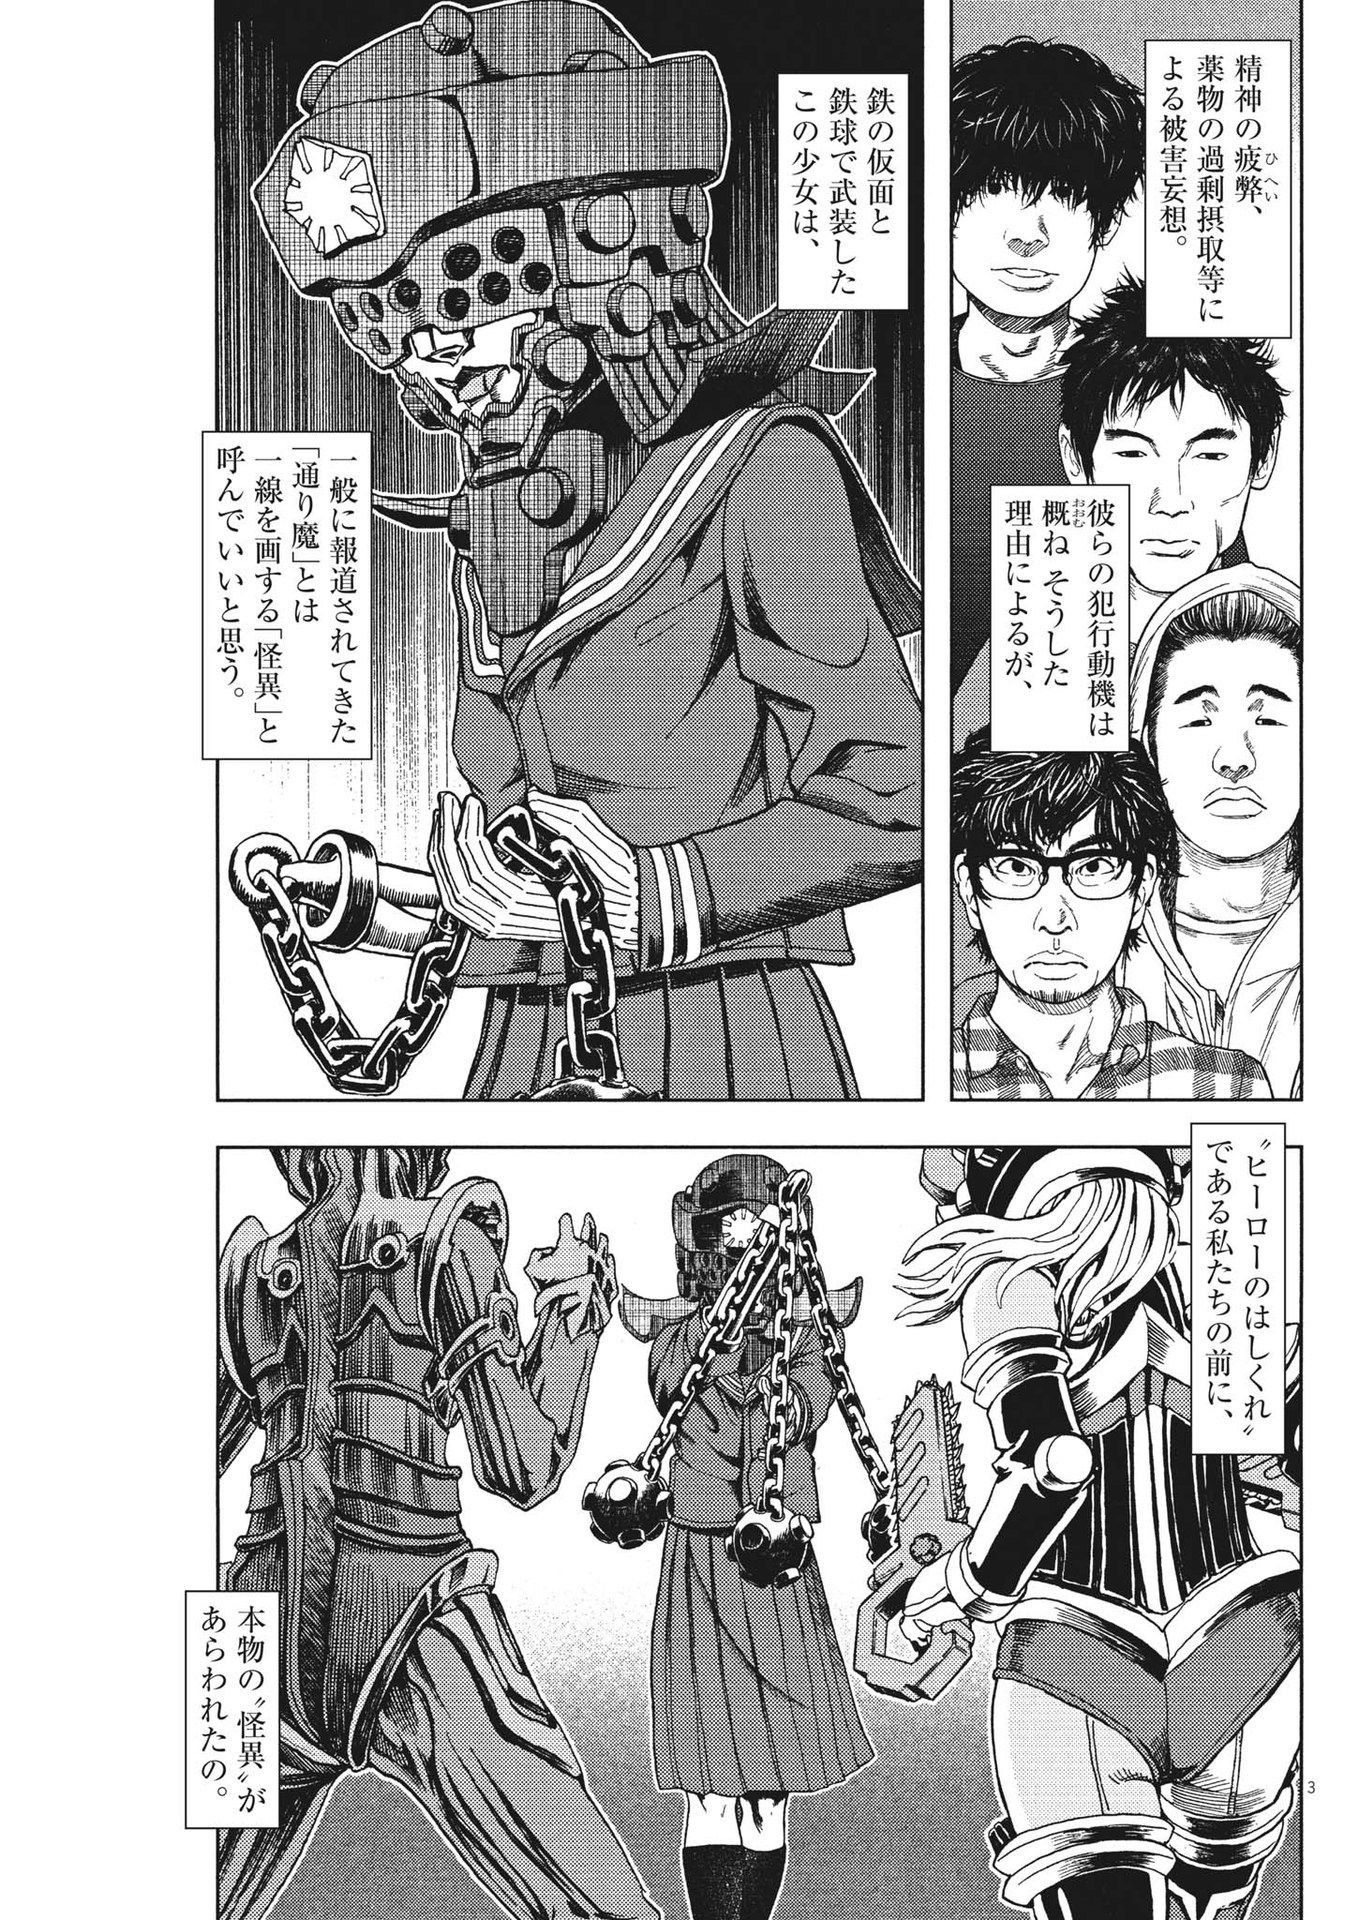 Gekkou Kamen - Chapter 41 - Page 3